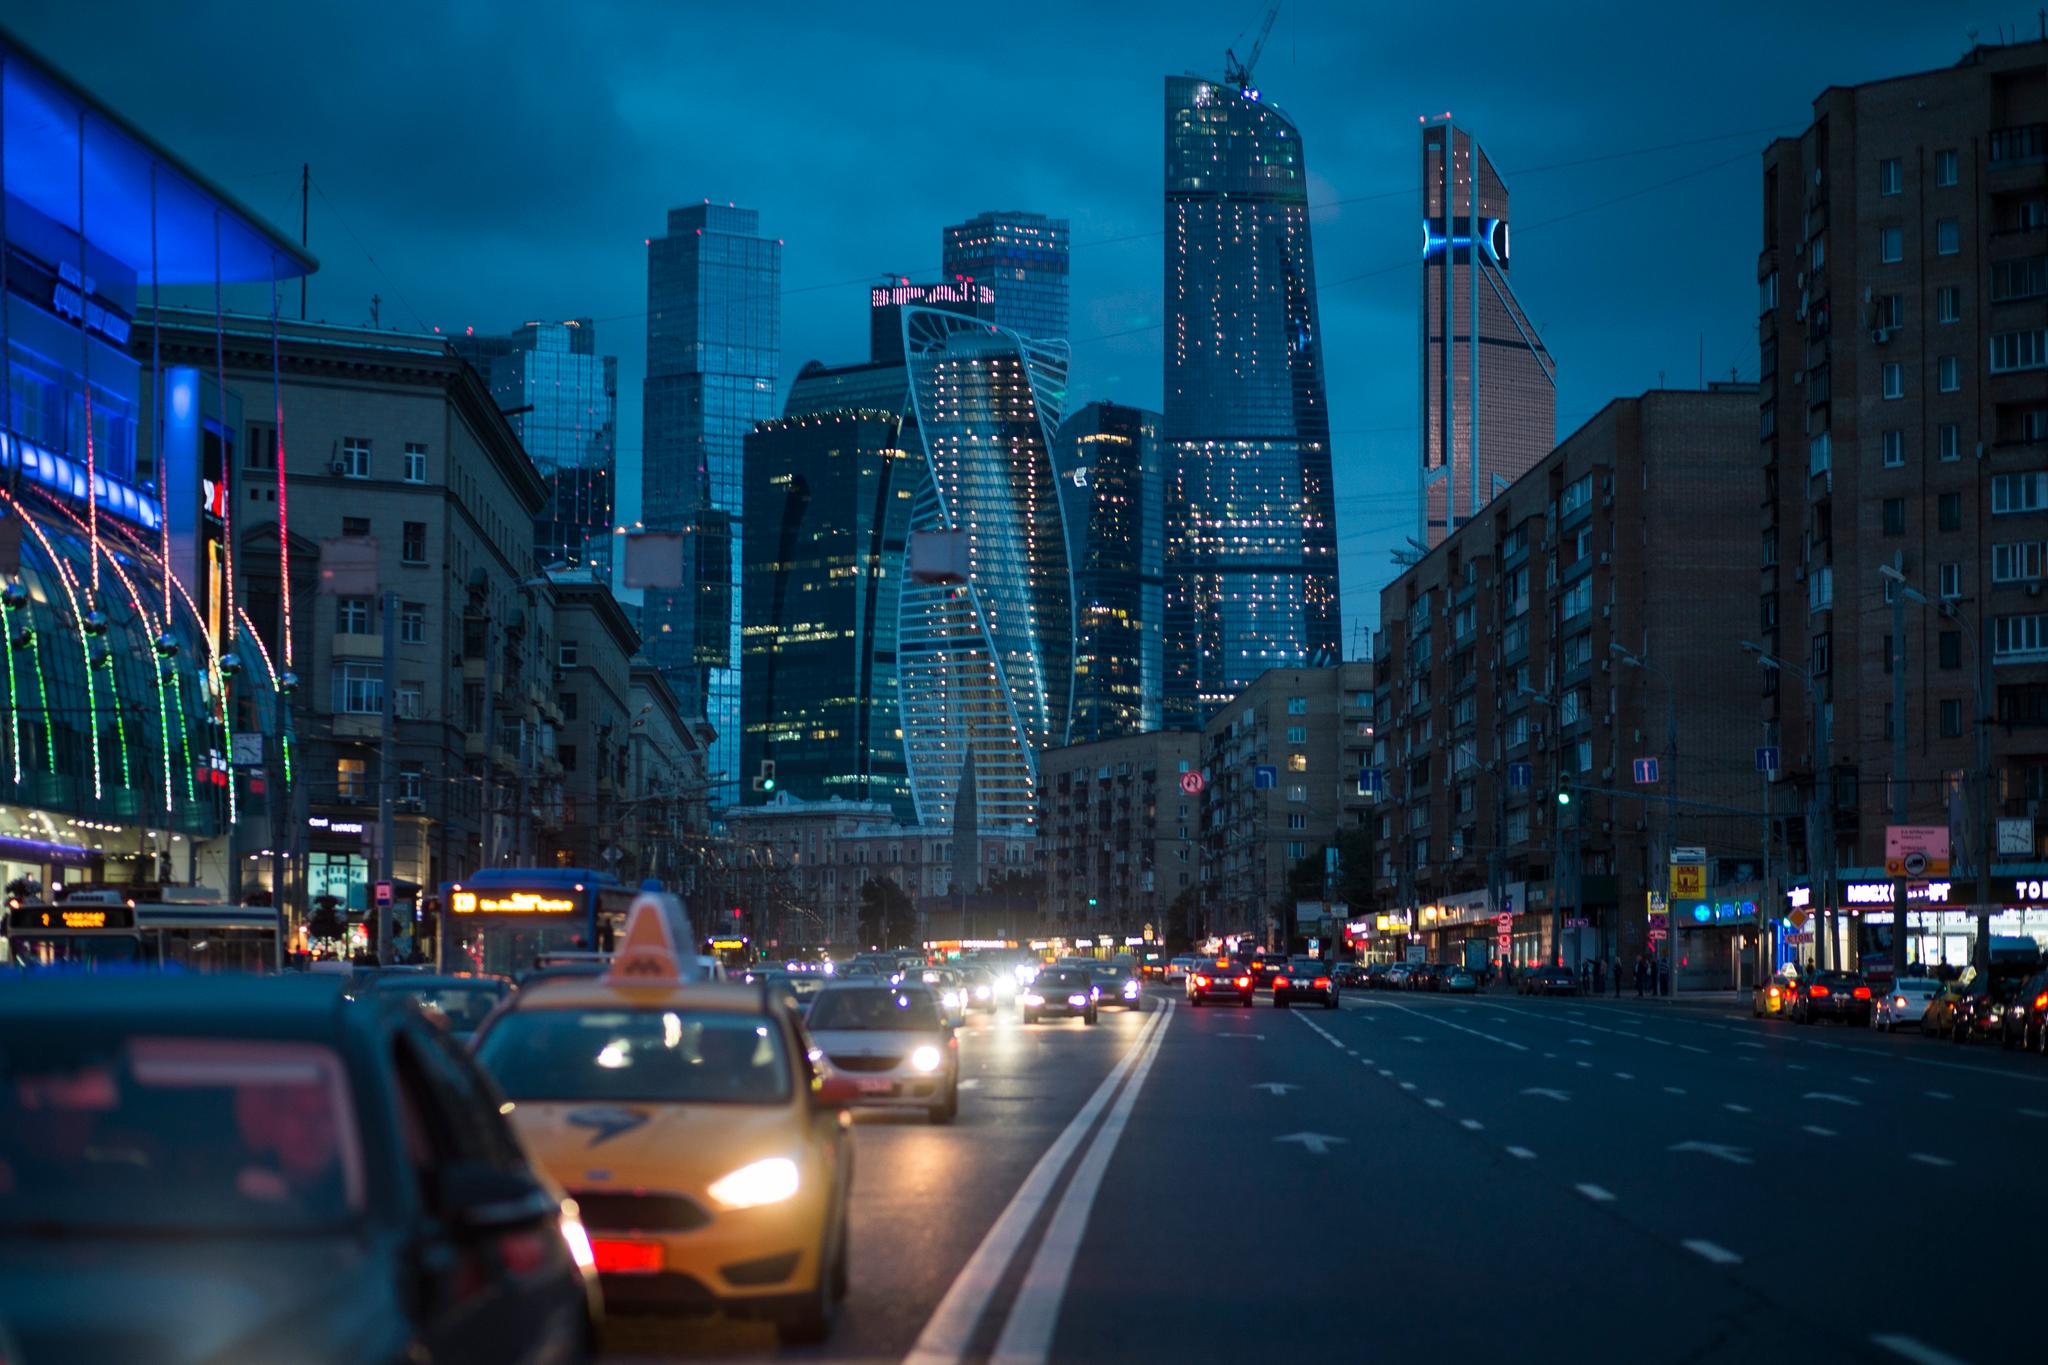 Moscow City i Moskva har ambisjoner om å bli et finansielt bindeledd mellom Europa og Asia.